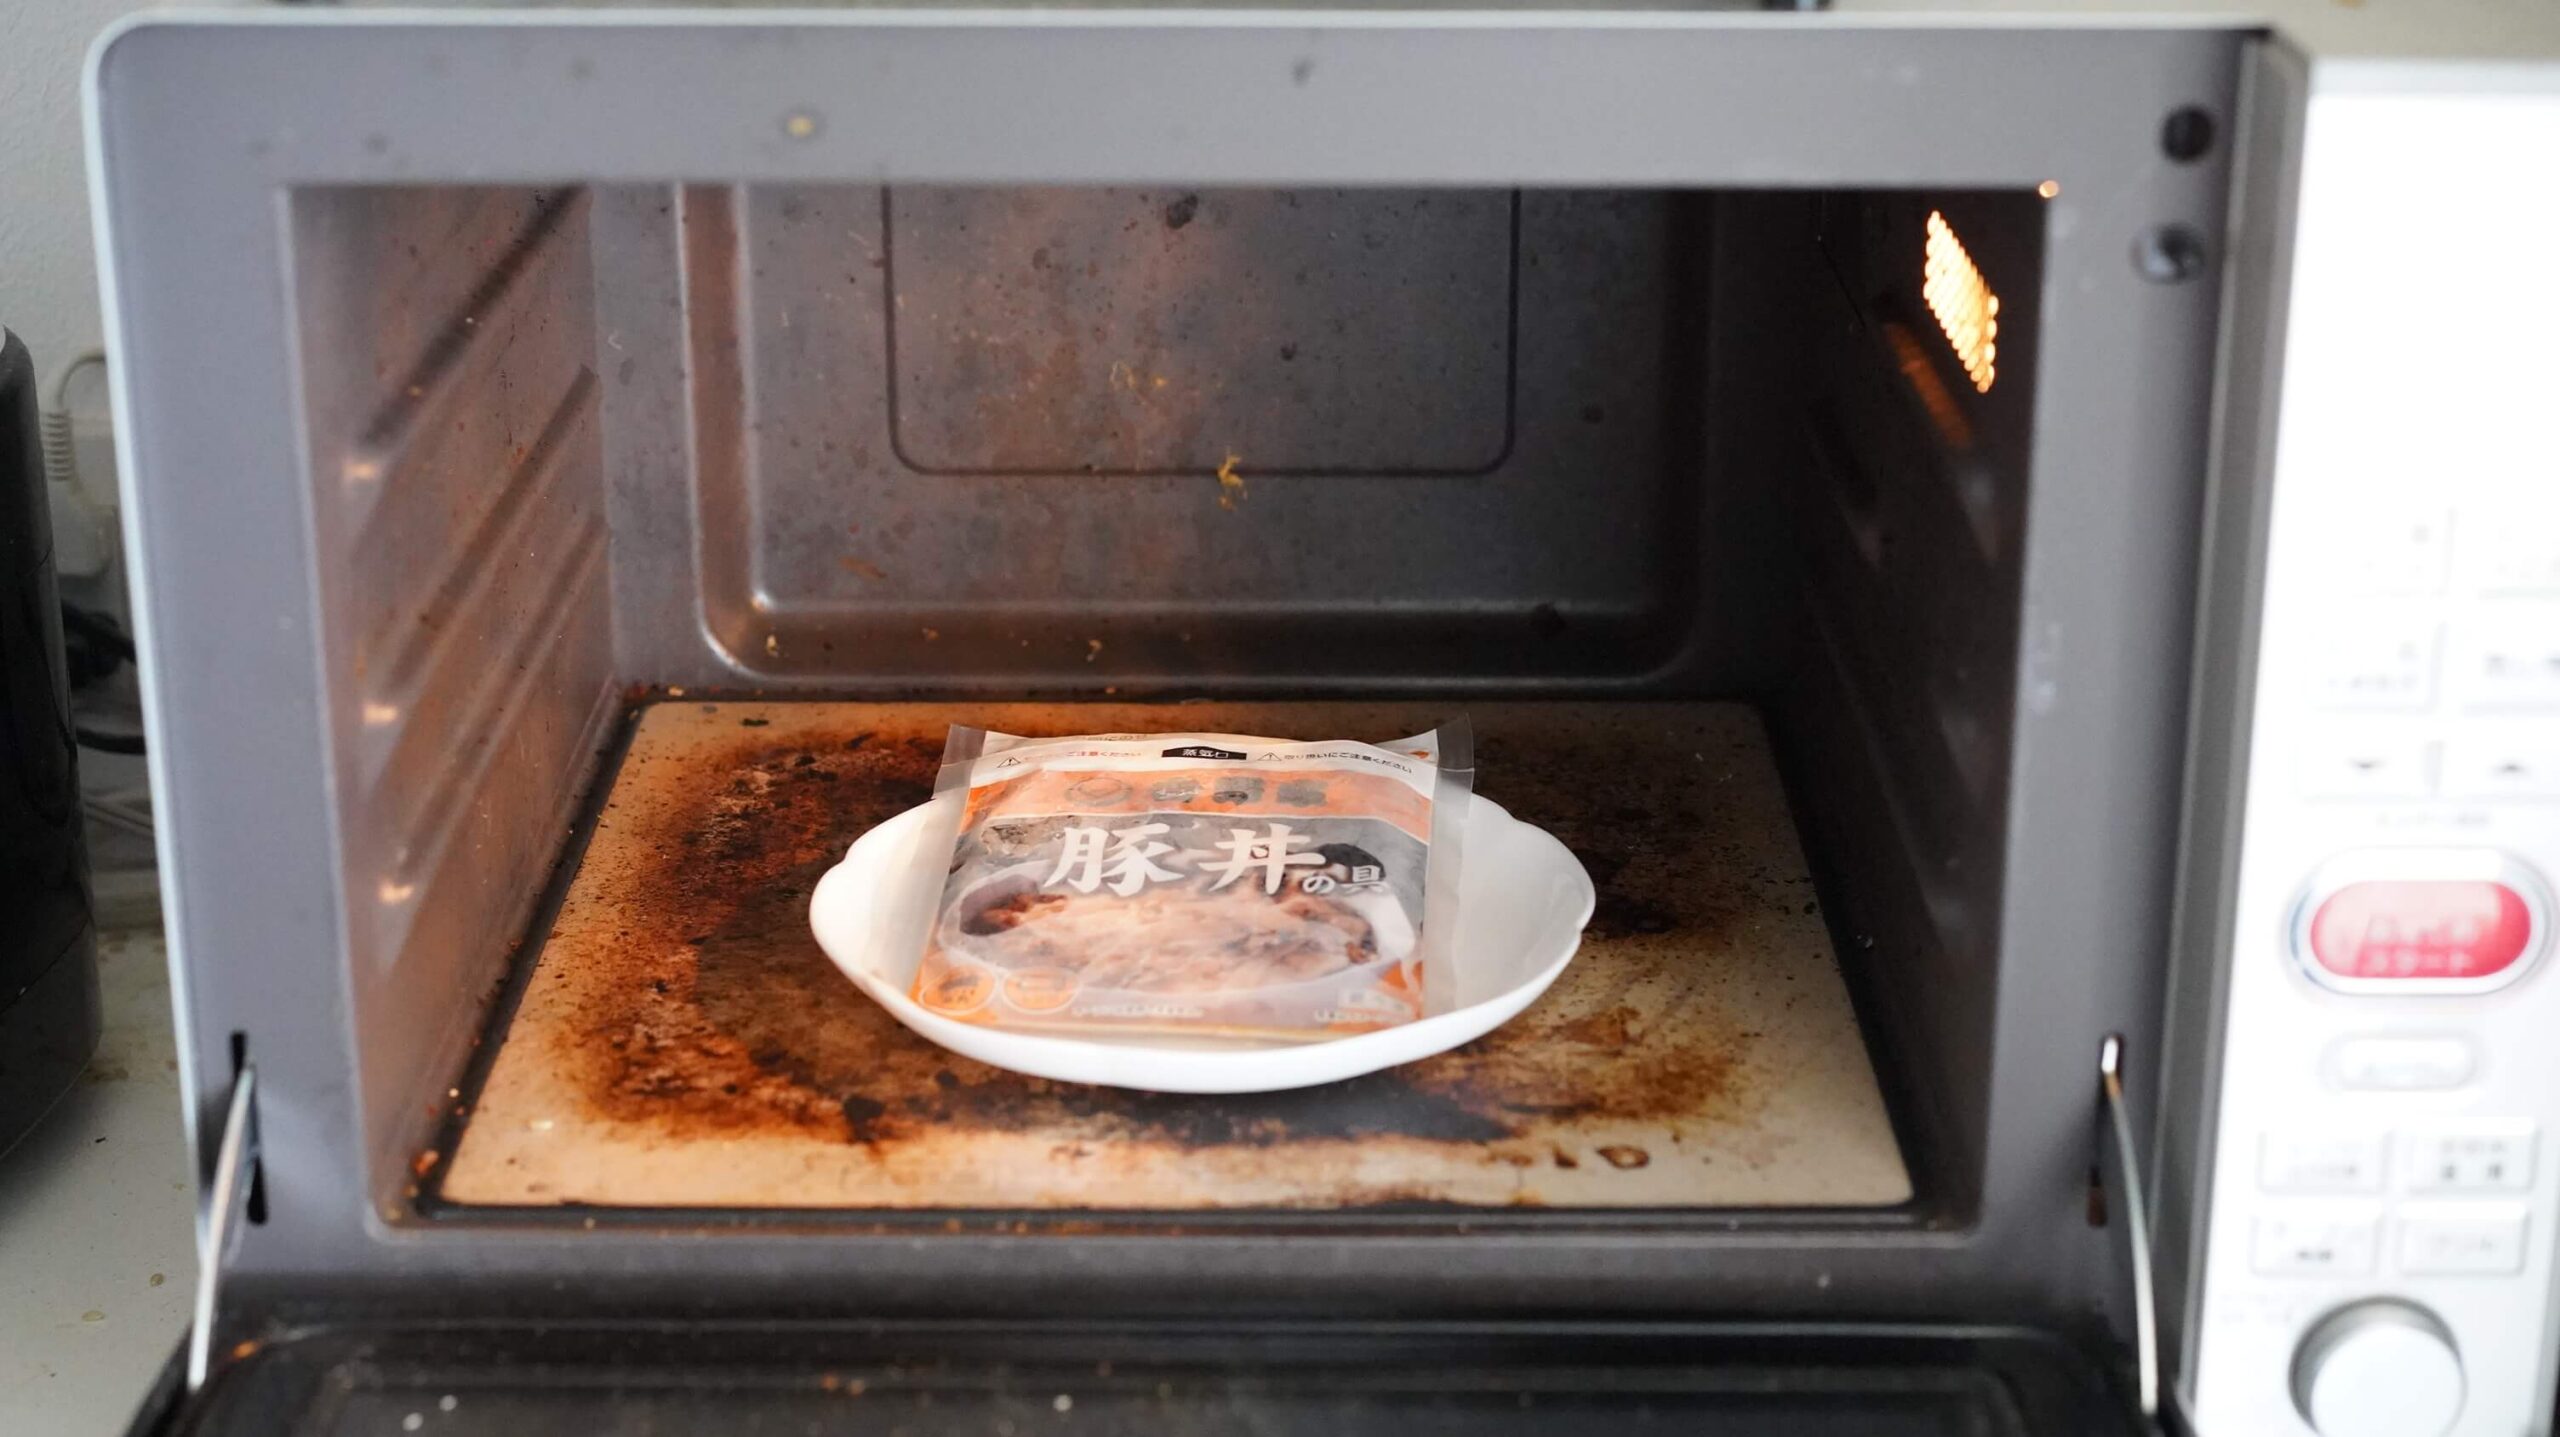 吉野家の冷凍食品「豚丼」を電子レンジで加熱している写真